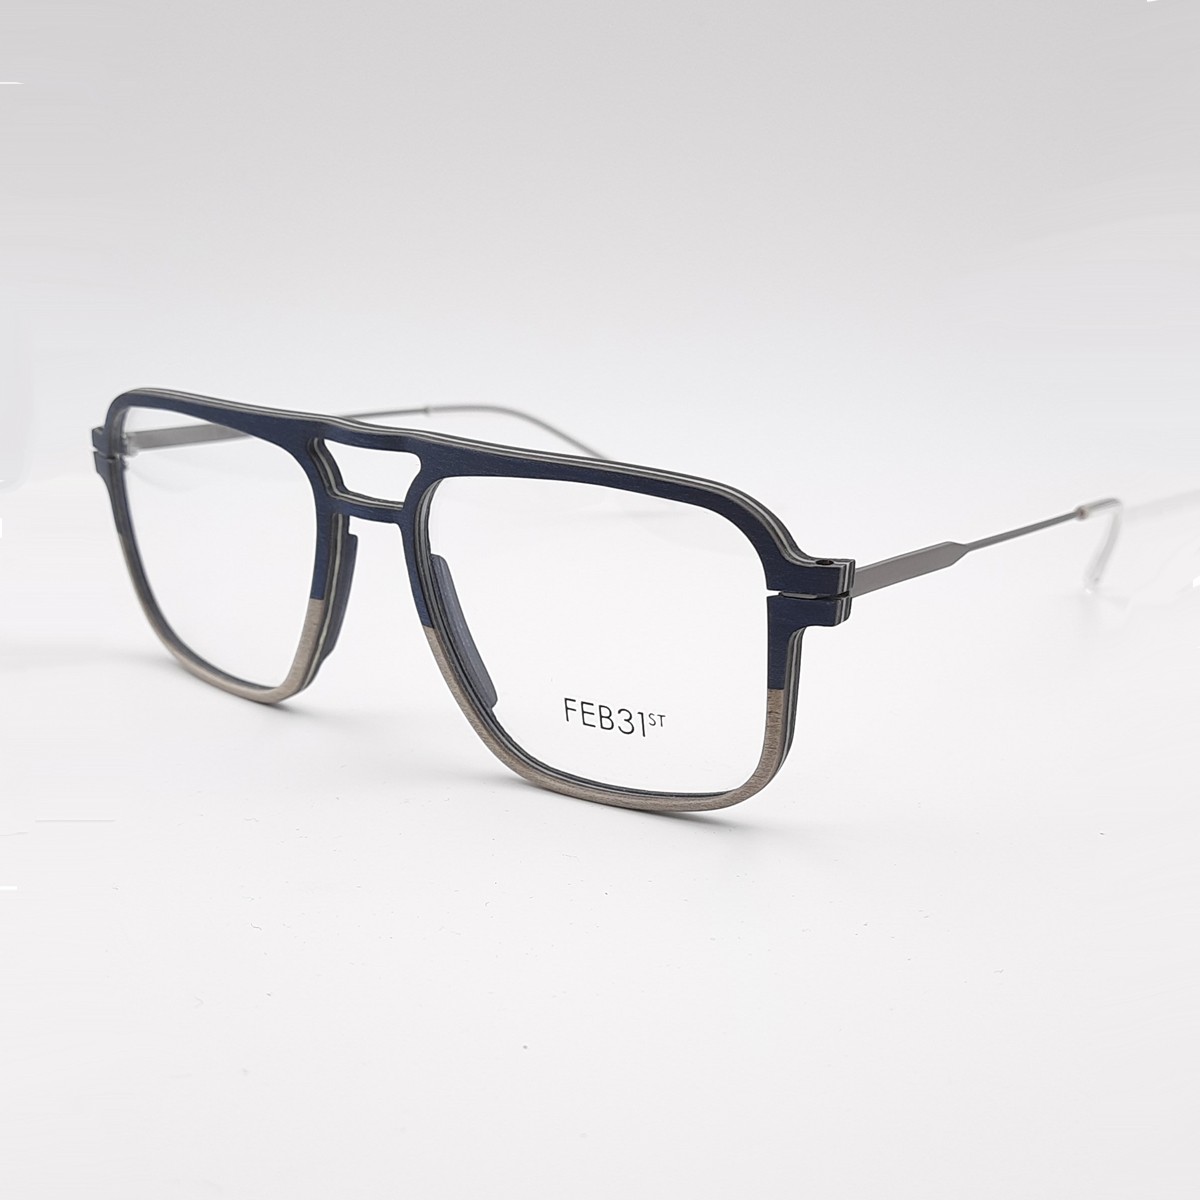 Feb31st Walter | Men's eyeglasses